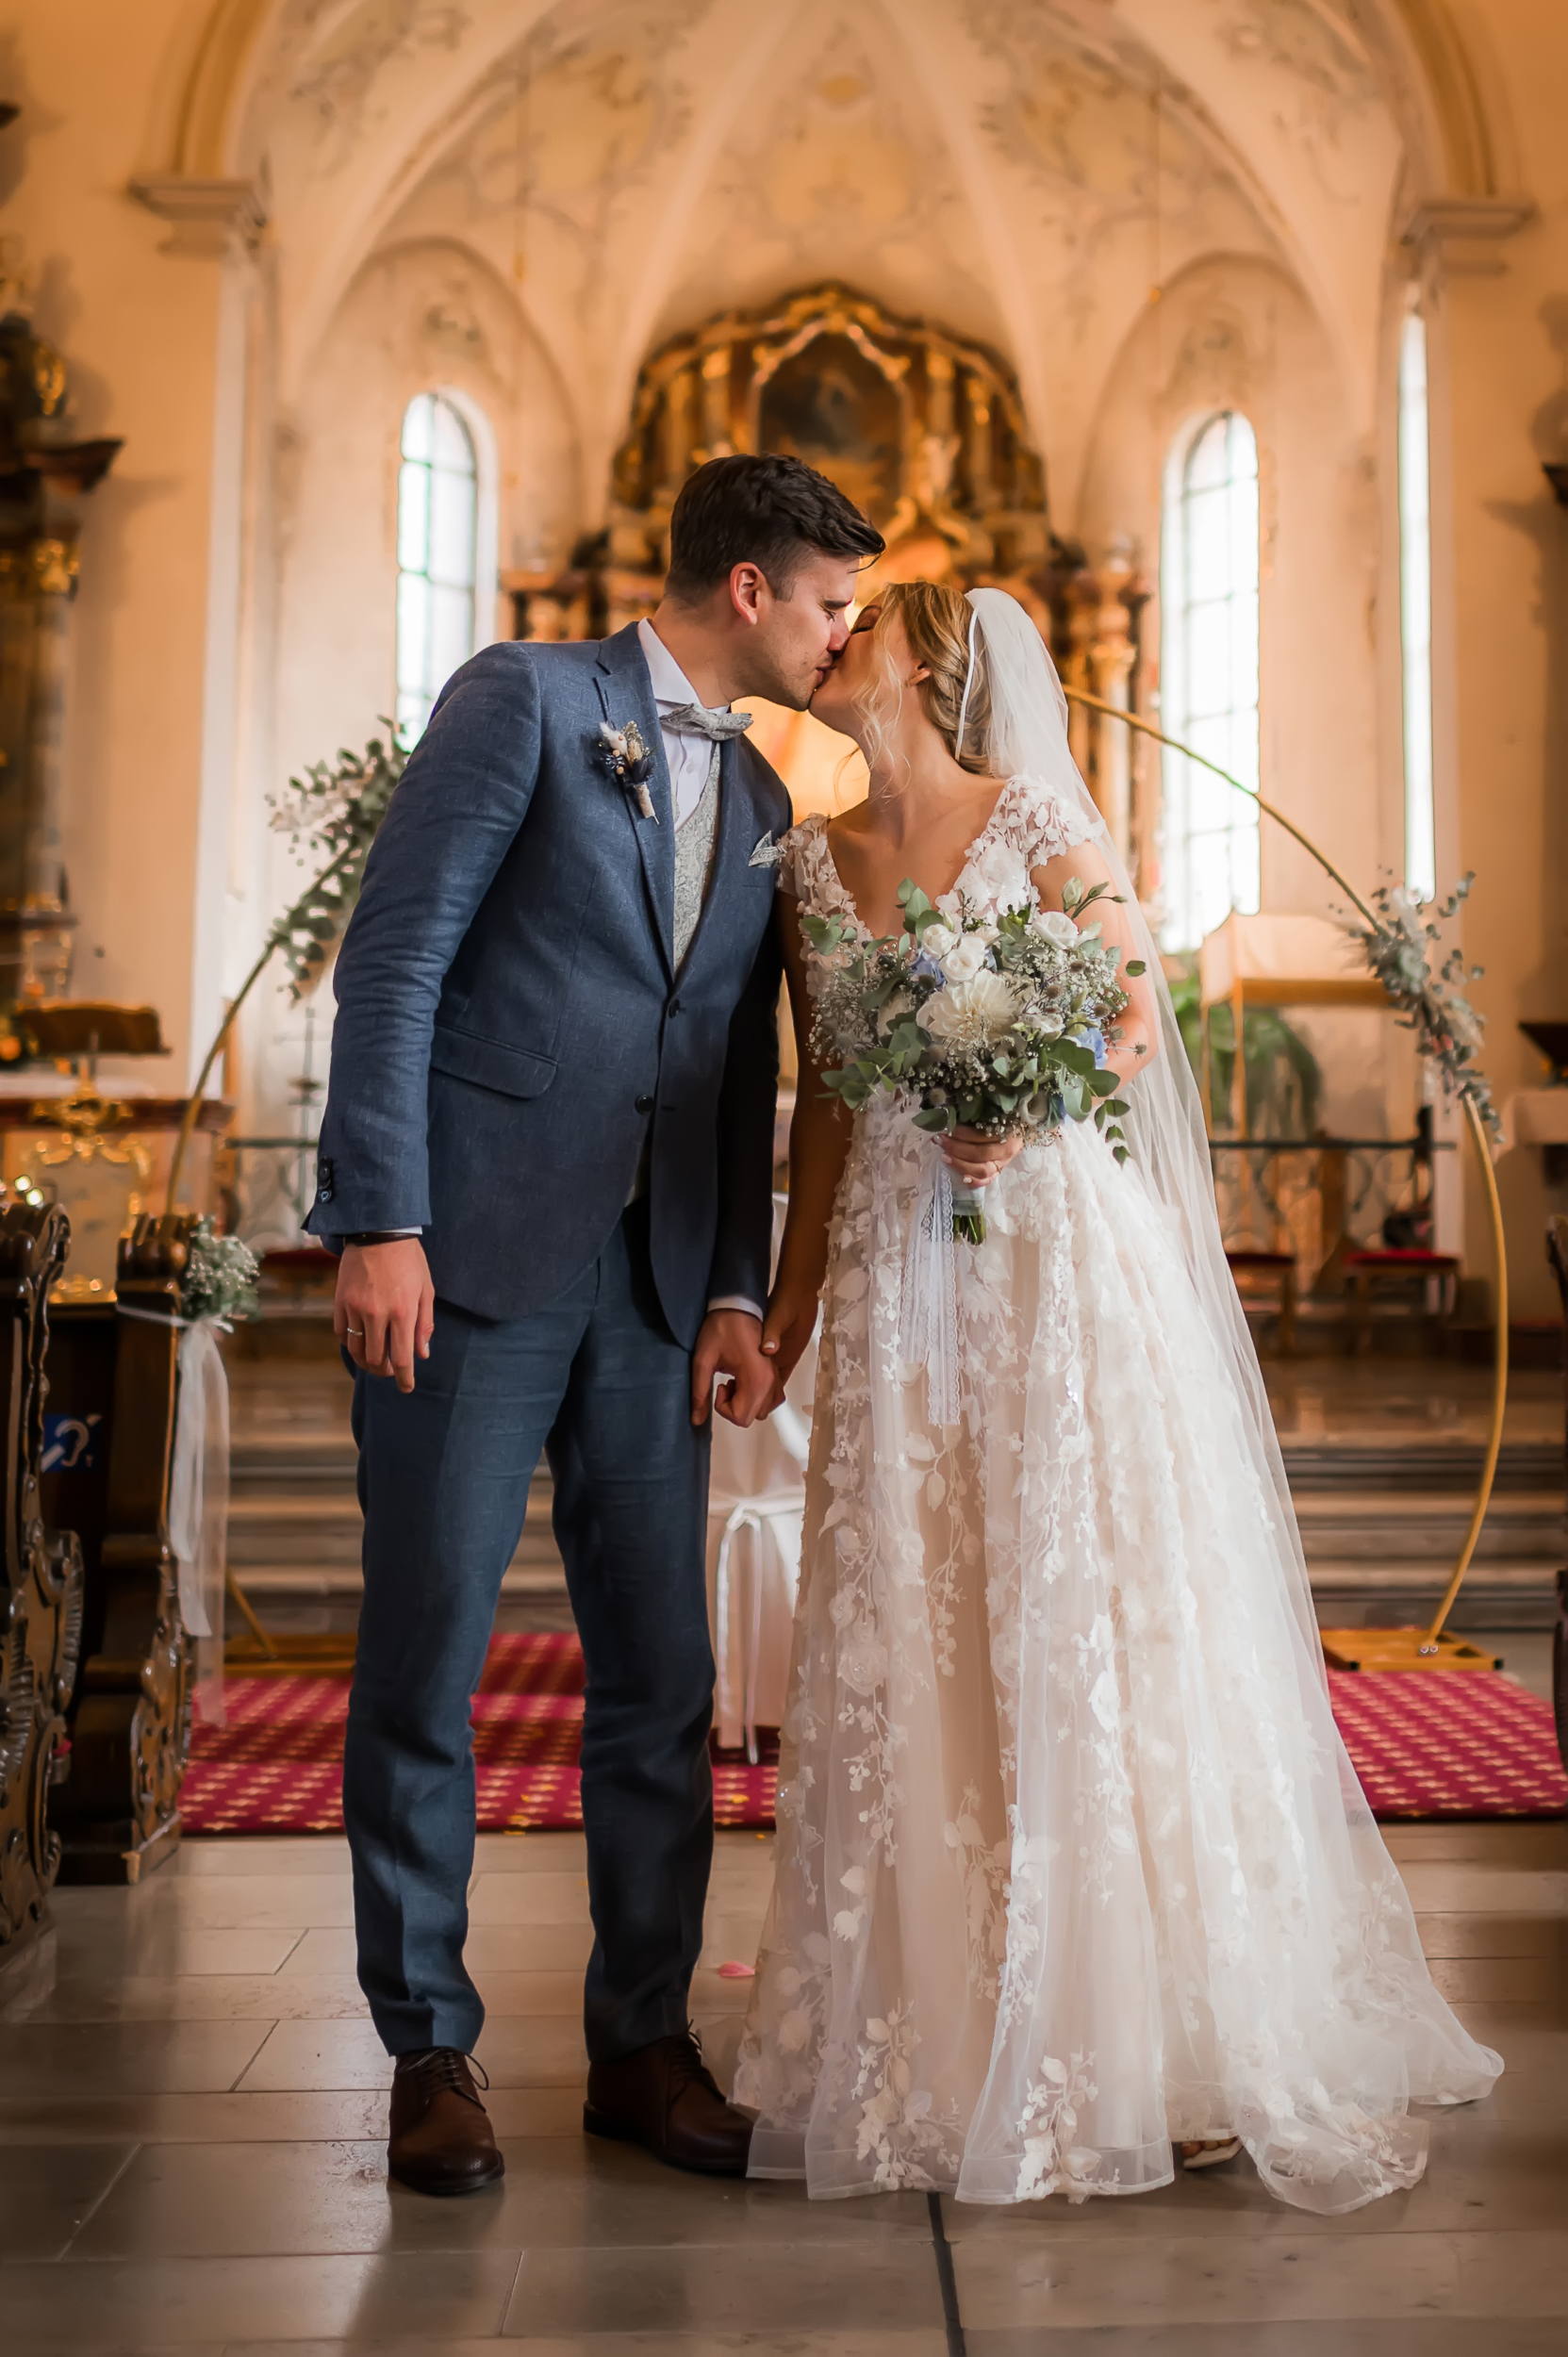 Brautpaar verlässt den Altar nach der kirchlichen Trauung und küsst sich vor dem dekorierten goldenen Bogen in der Wallfahrtskirche Todtmoos im Schwarzwald.